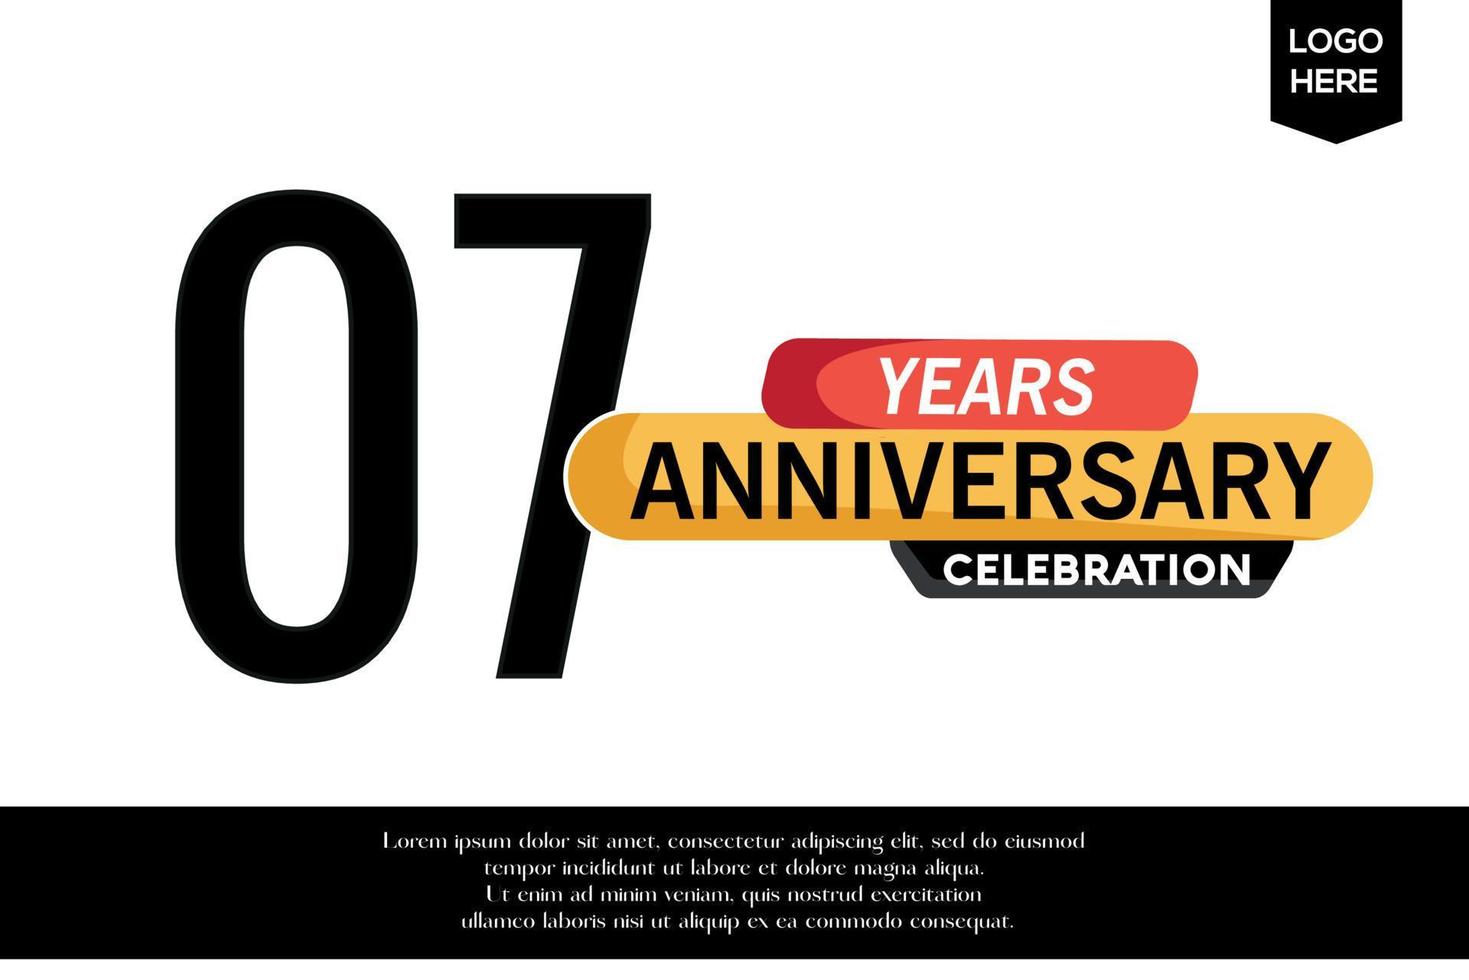 07. Jahrestag Feier Logo schwarz Gelb farbig mit Text im grau Farbe isoliert auf Weiß Hintergrund Vektor Vorlage Design